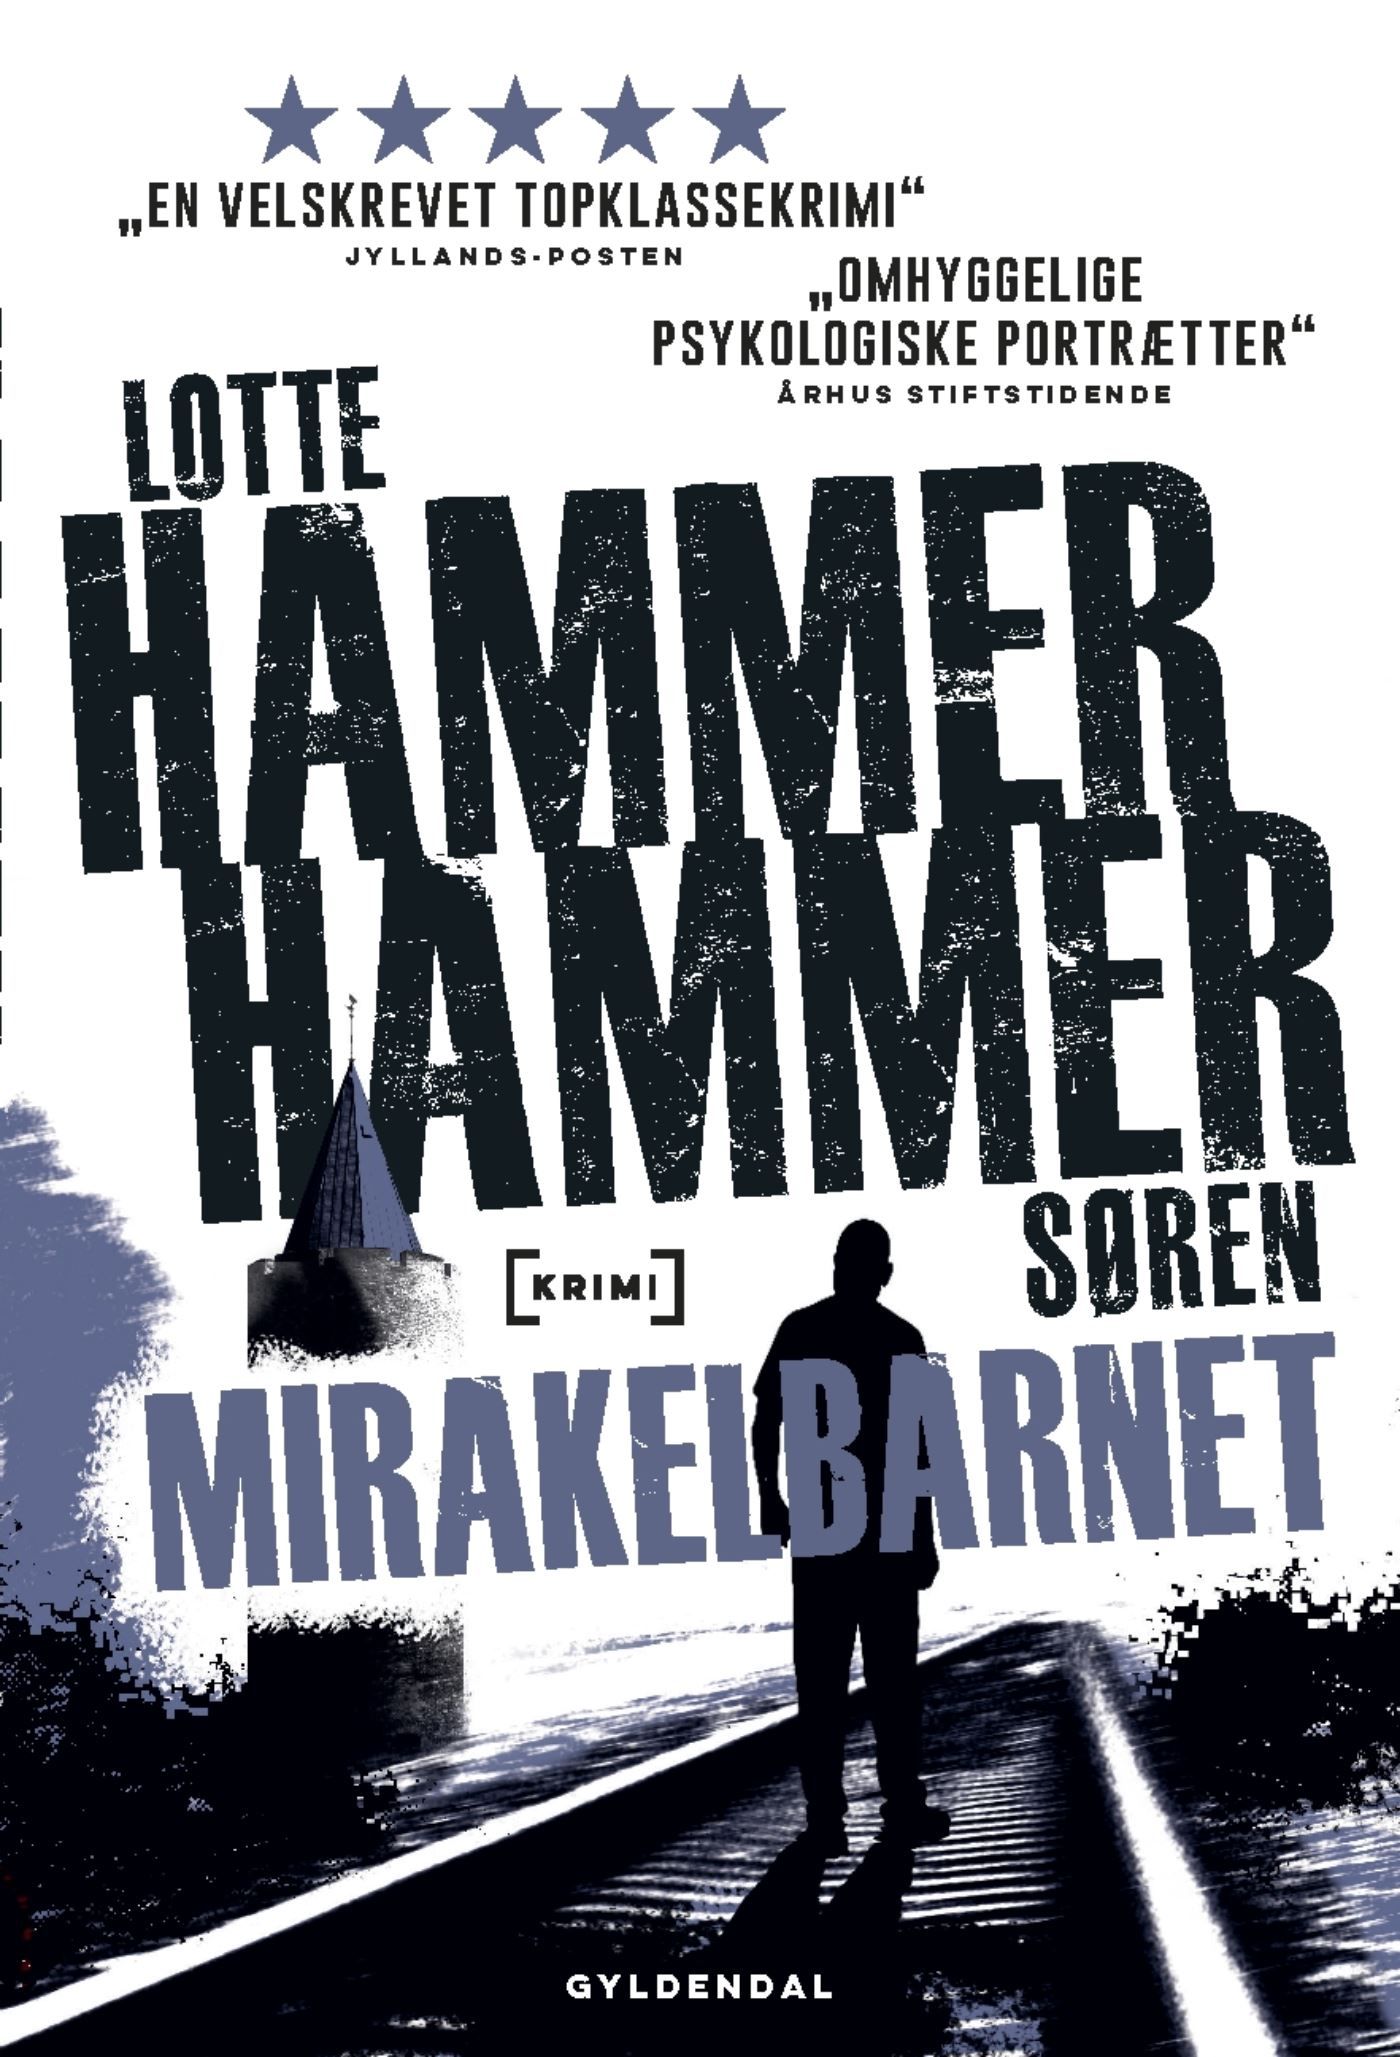 Mirakelbarnet, ljudbok av Lotte og Søren Hammer